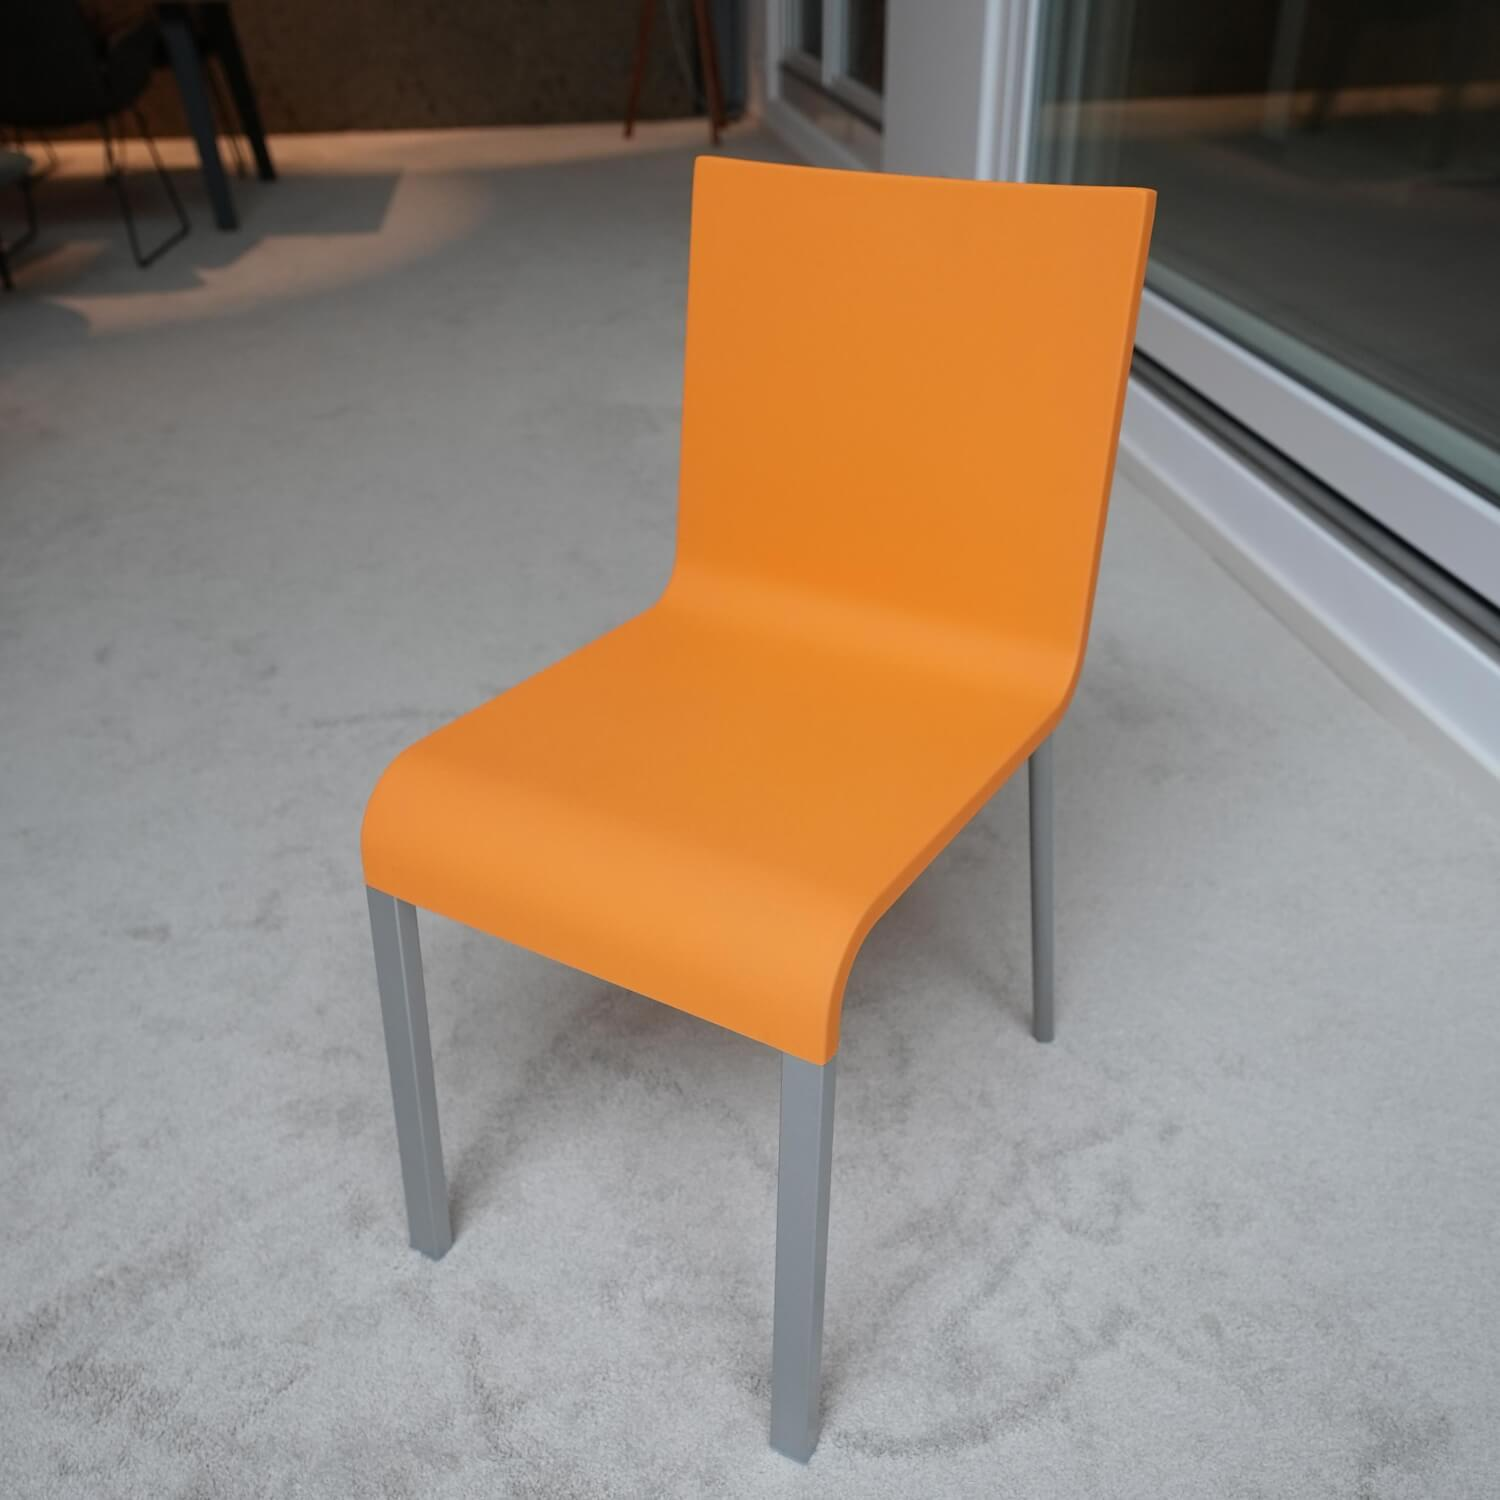 Stuhl 03 Sitzschalenfarbe Mango Untergestell Pulverbeschichtet Silber Glatt